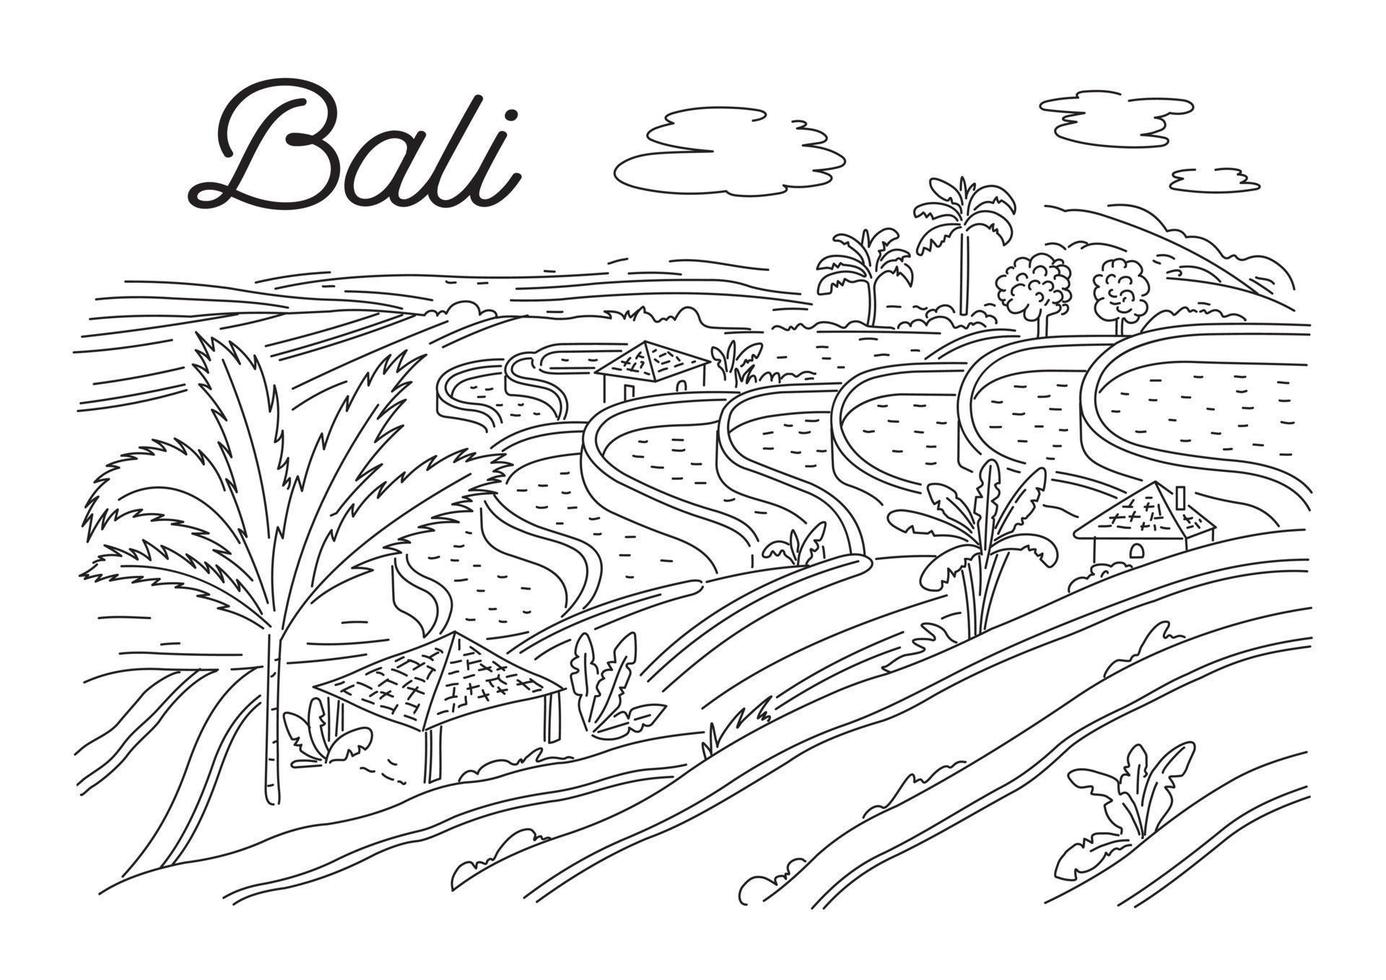 rijst- terrassen in Bali. Indonesisch natuur. vector lineair illustratie, schetsen